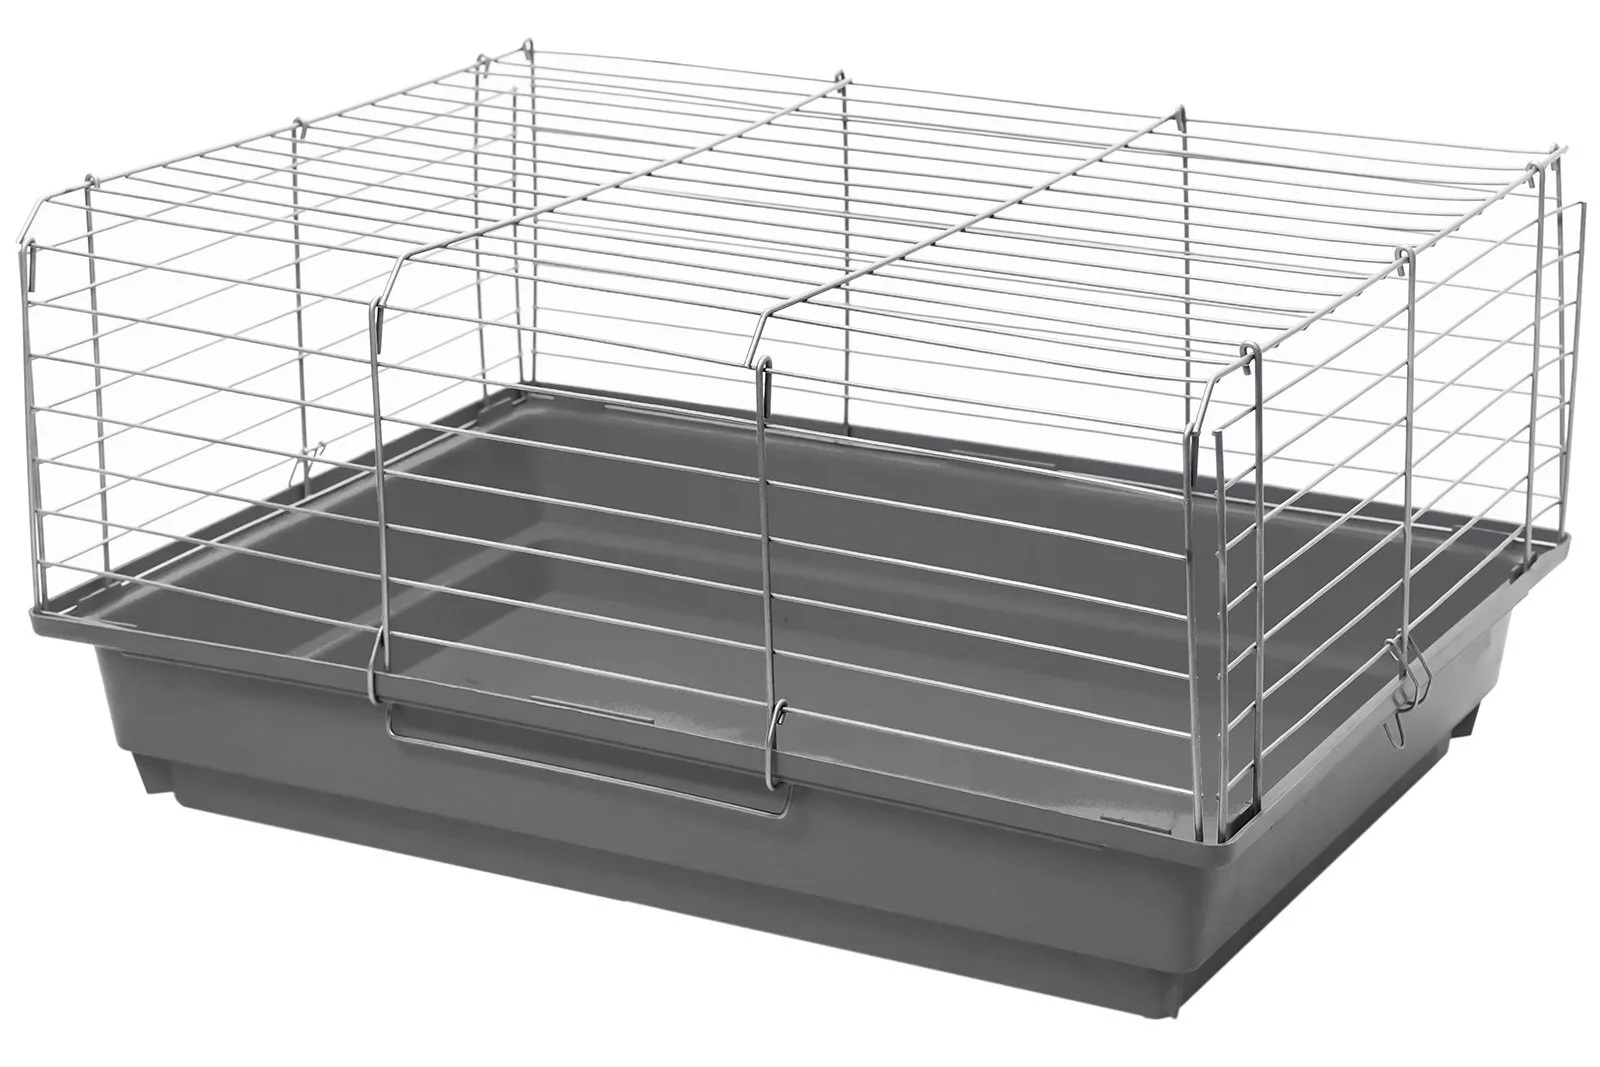 Клетка складная для кроликов и морских свинок серая/хром Дарэлл есо роджер-1 58х40х30см